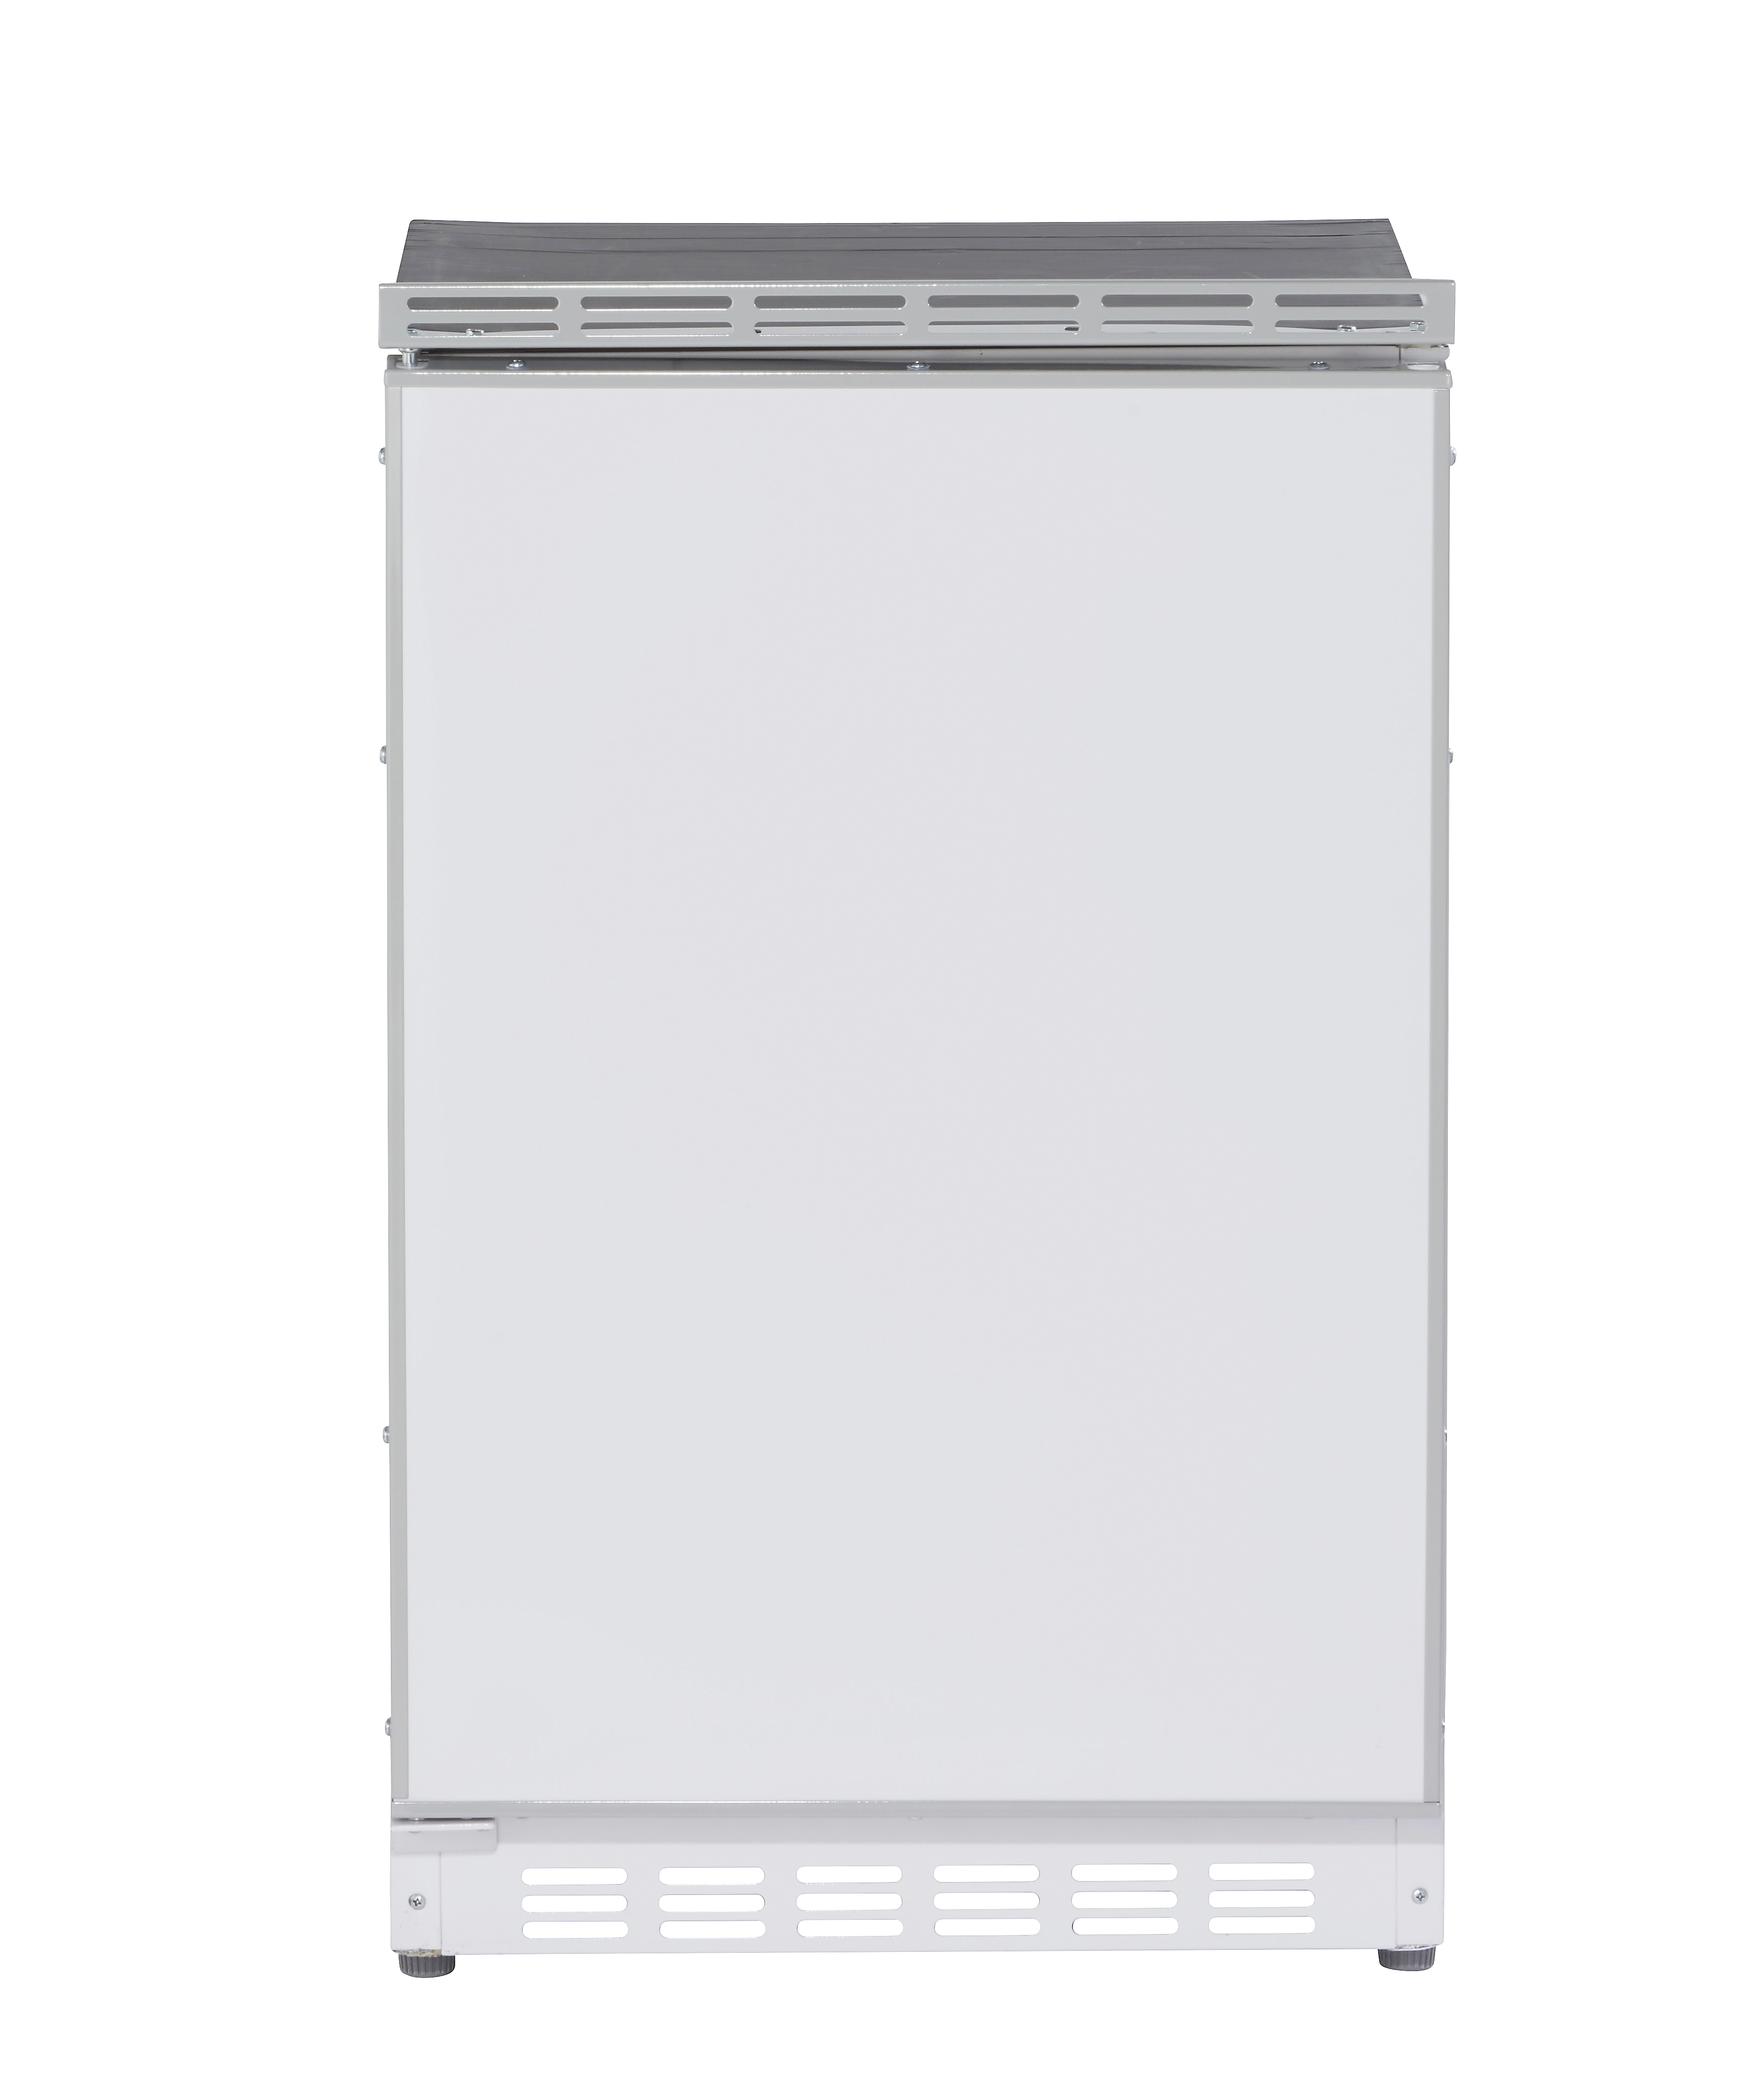 Kühlschrank mit Gefrierfach PKM KS82.3 BxHxT 50 x 82,1 x